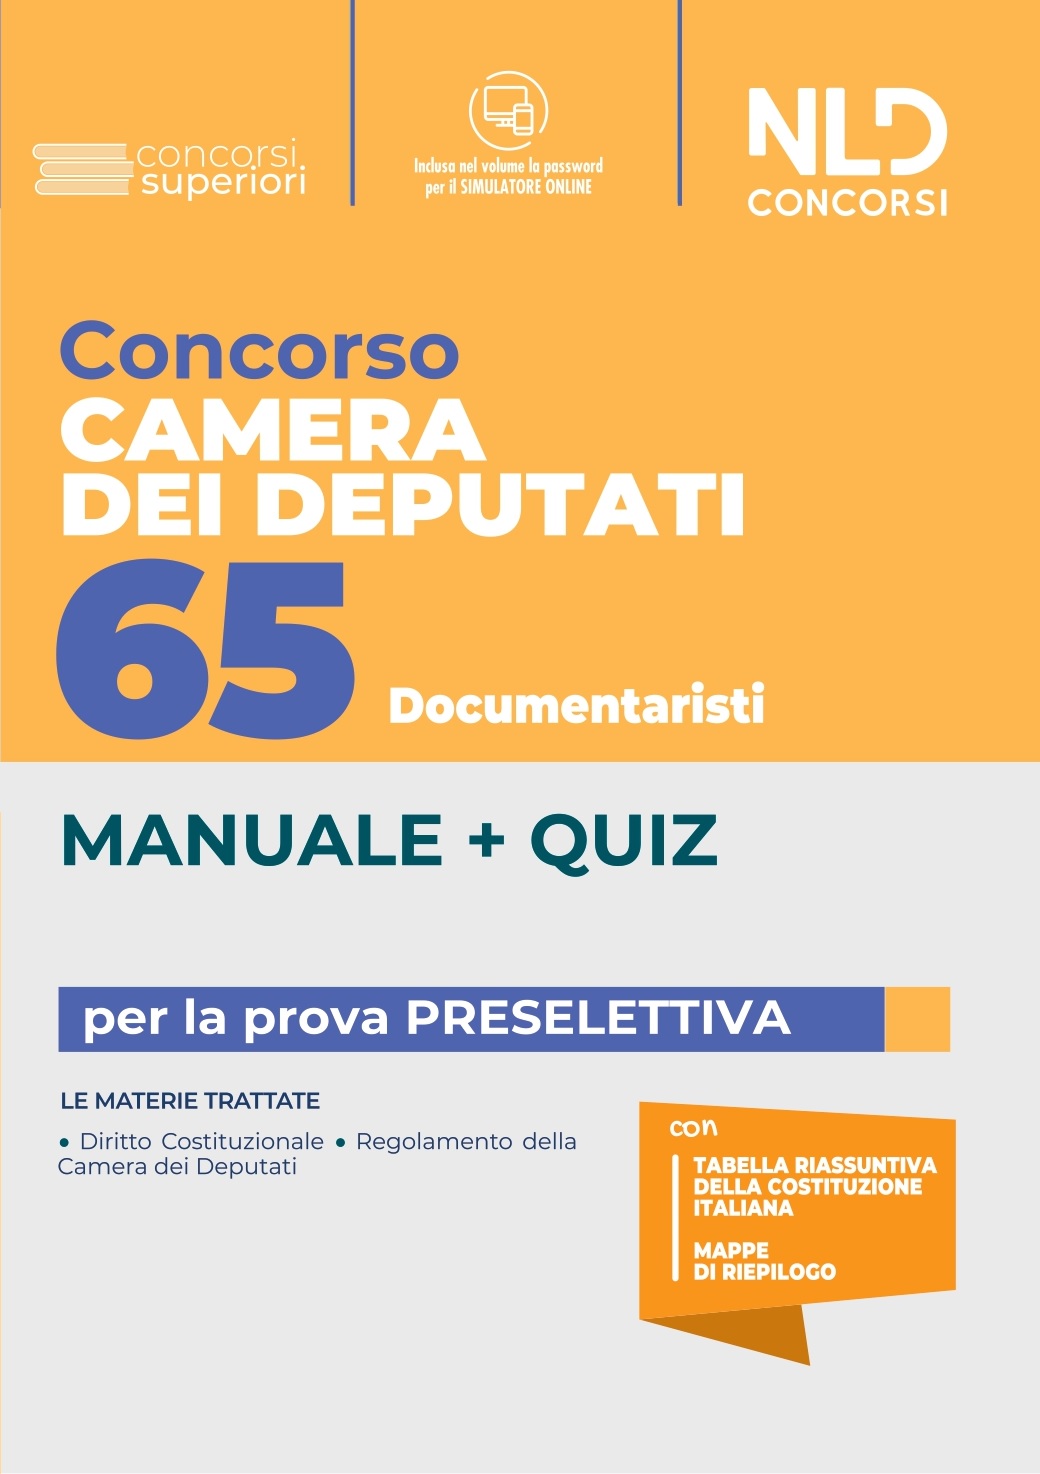 Concorso 65 Documentaristi Camera Dei Deputati. Manuale + Quiz Per La Prova Preselettiva 2022 (2)